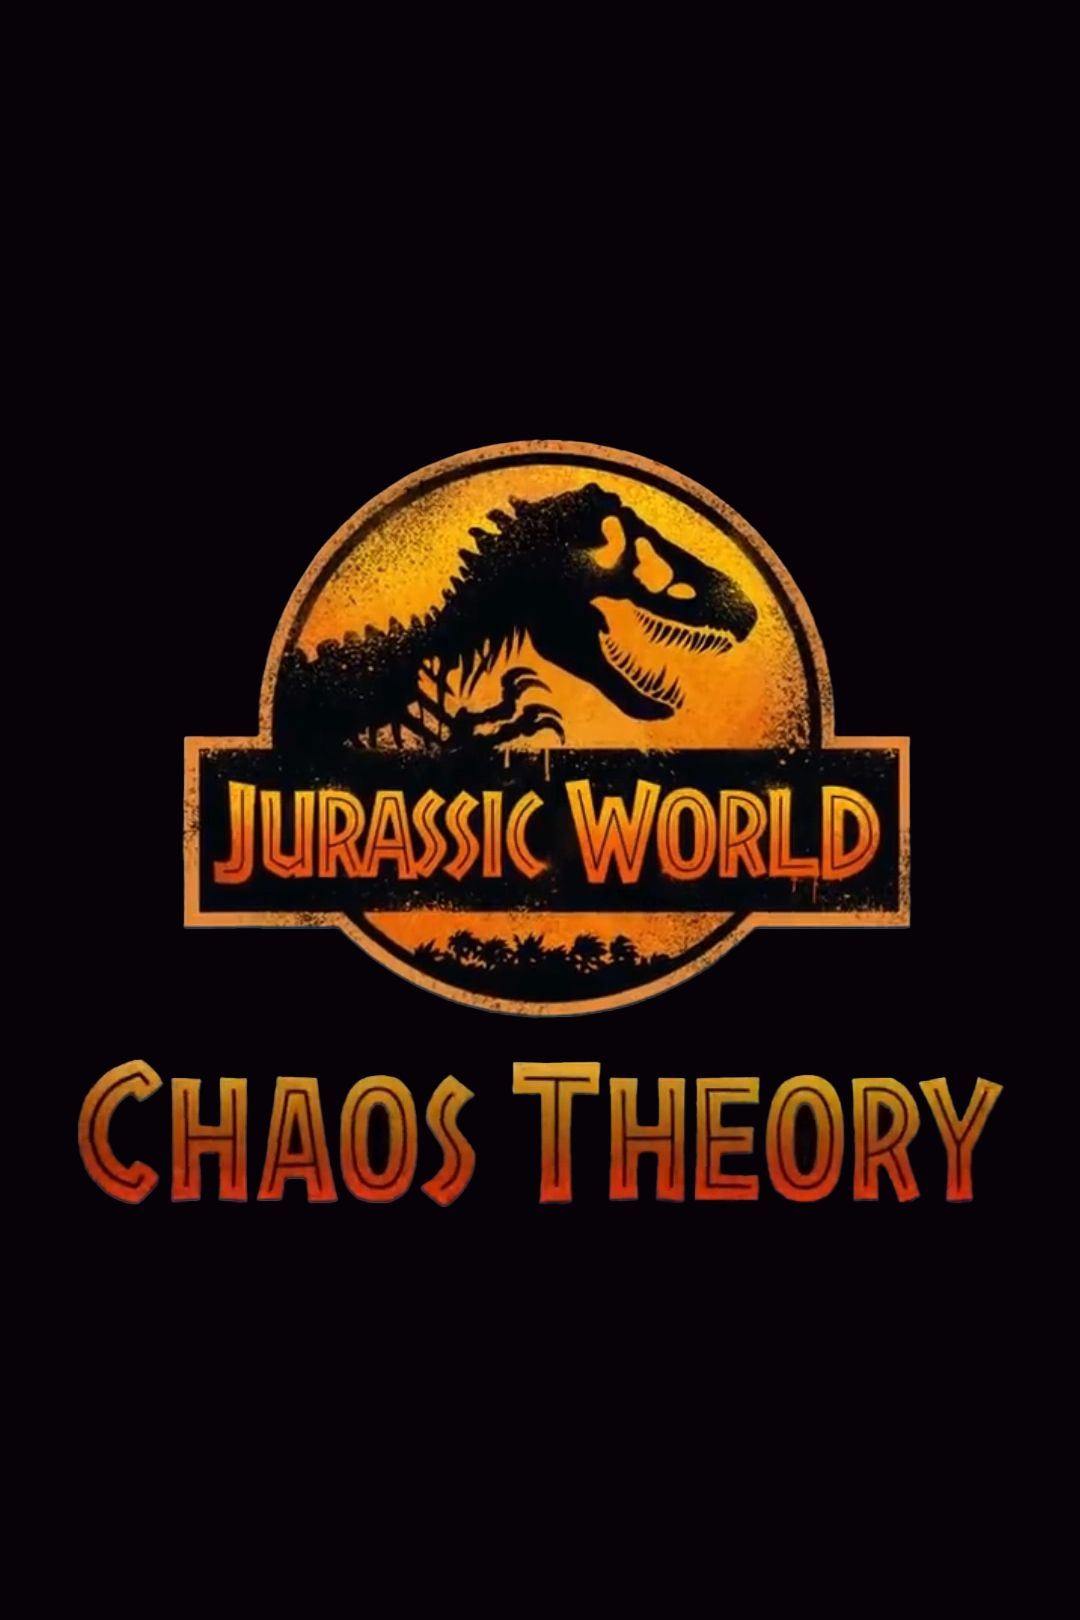 Pôster do logotipo do programa de TV Jurassic World Chaos Theory